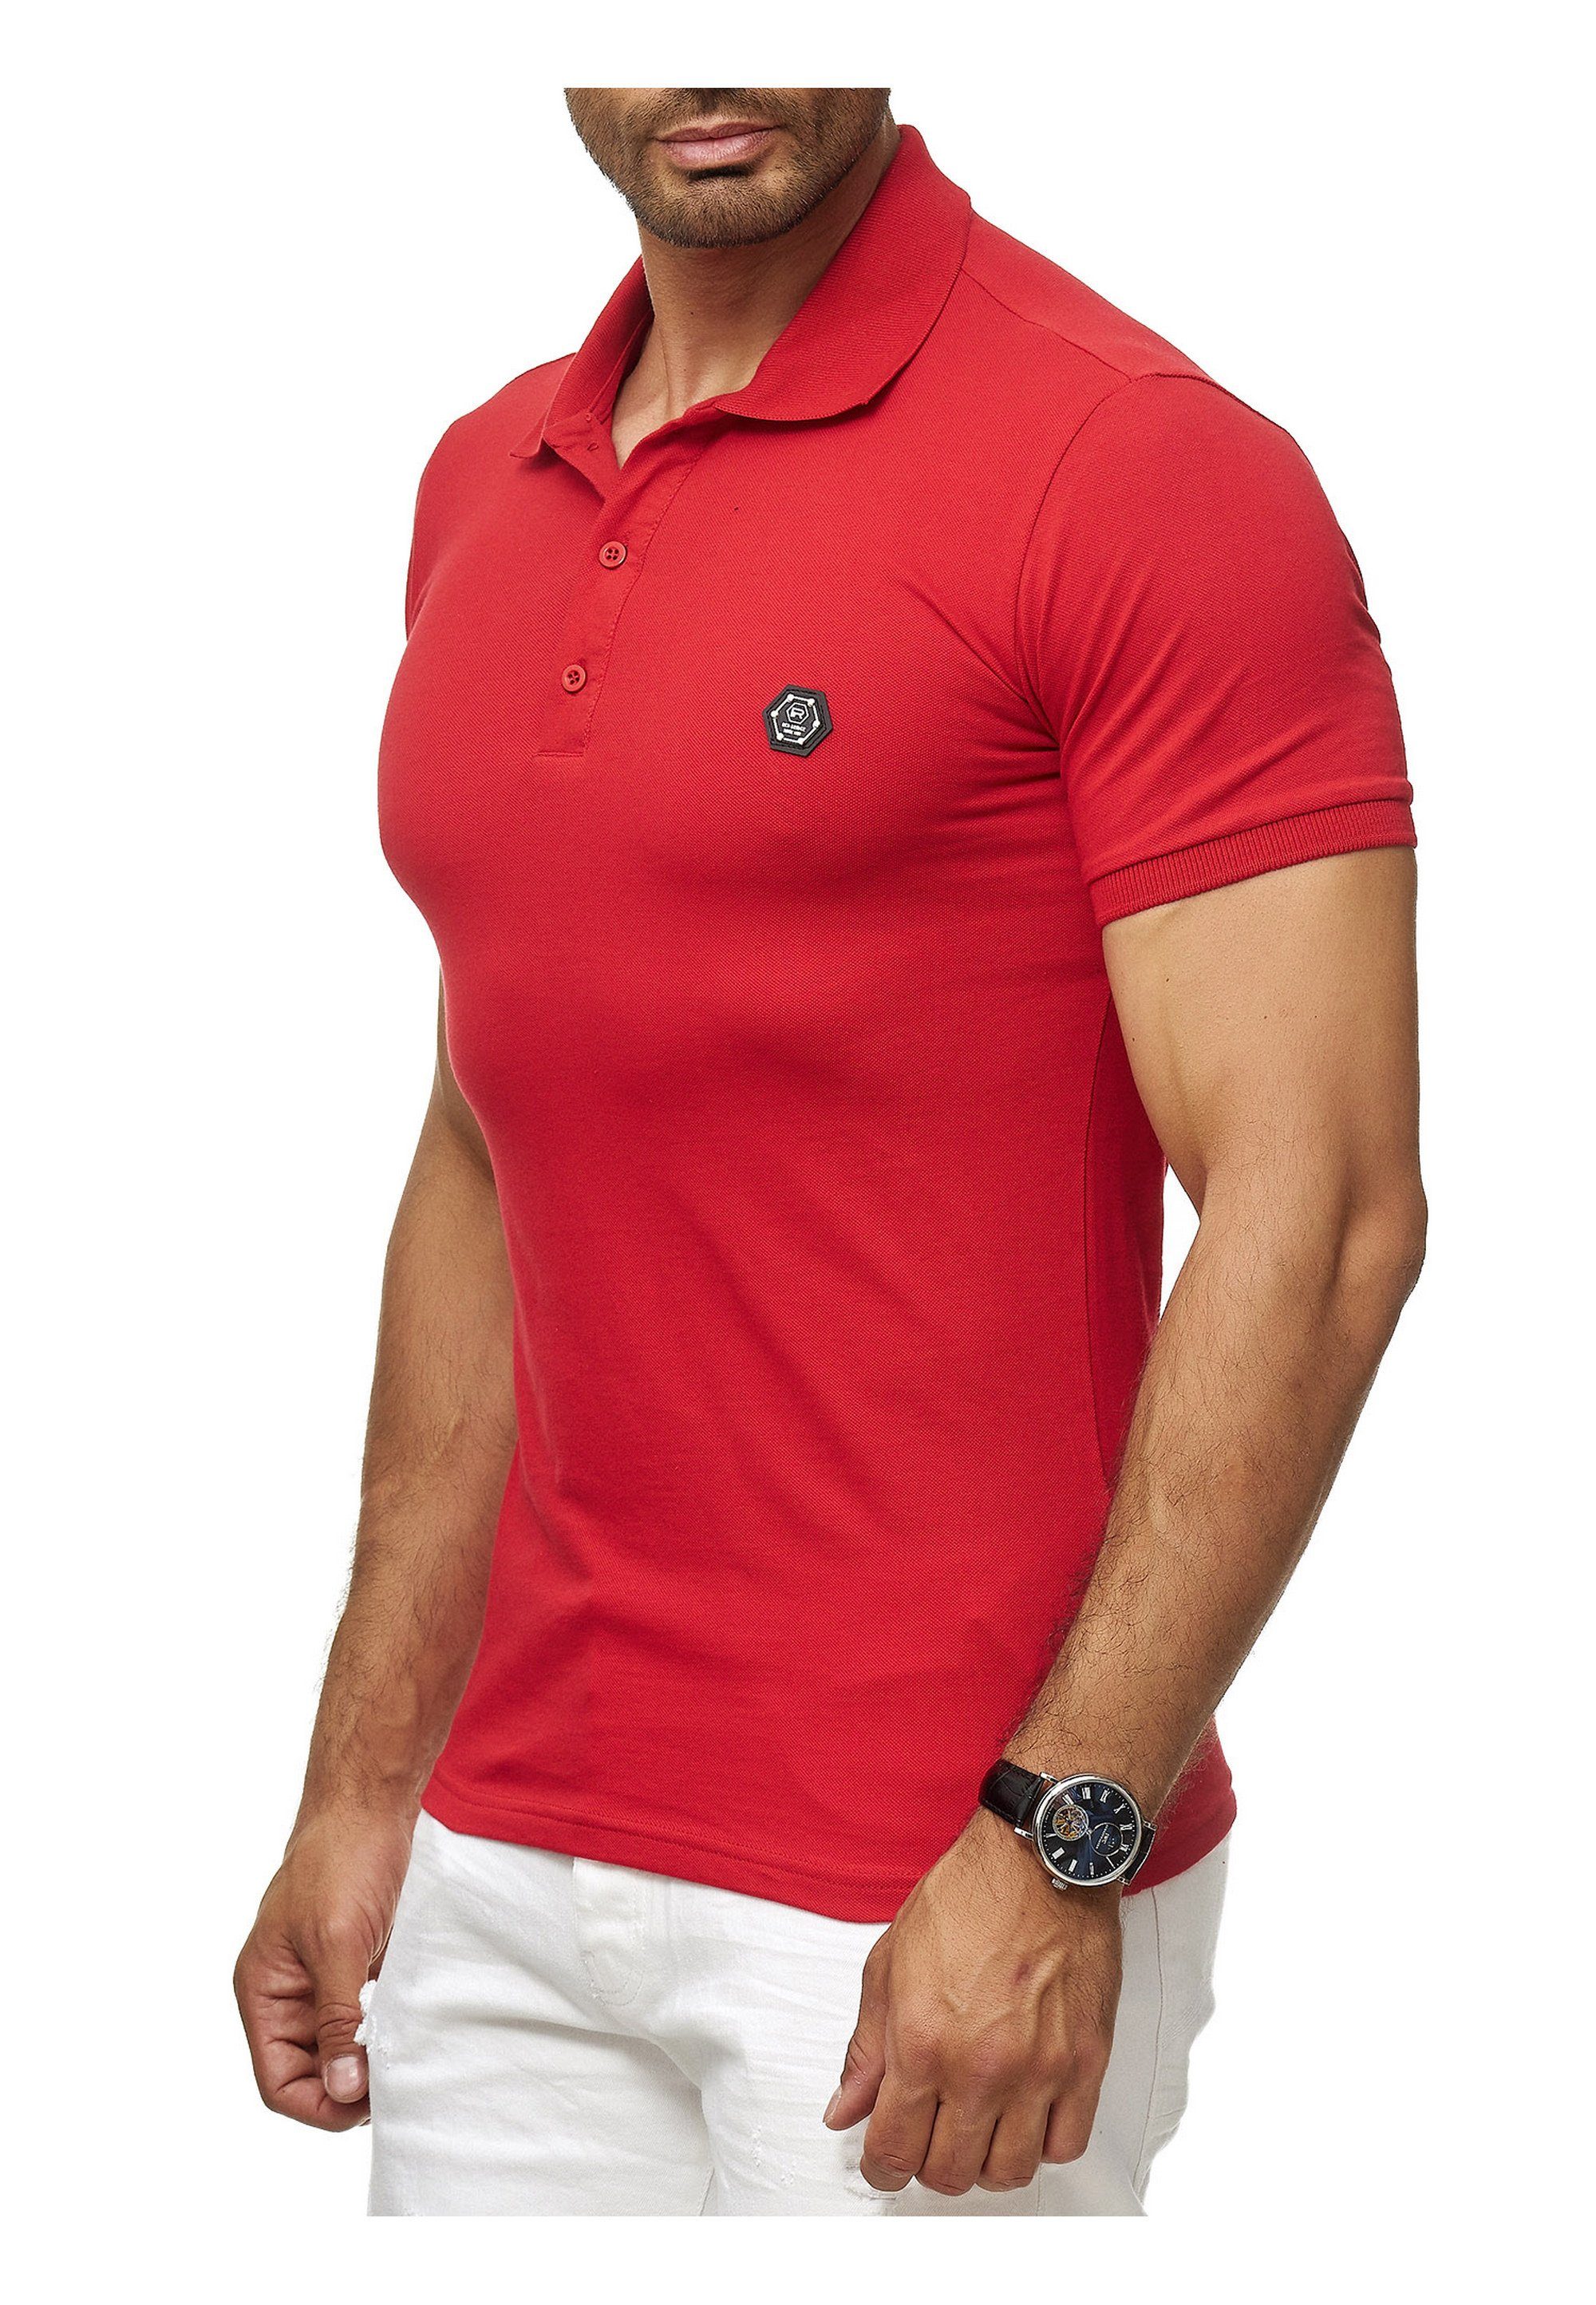 Beach Long RedBridge Brandlogo stylischem rot Poloshirt mit